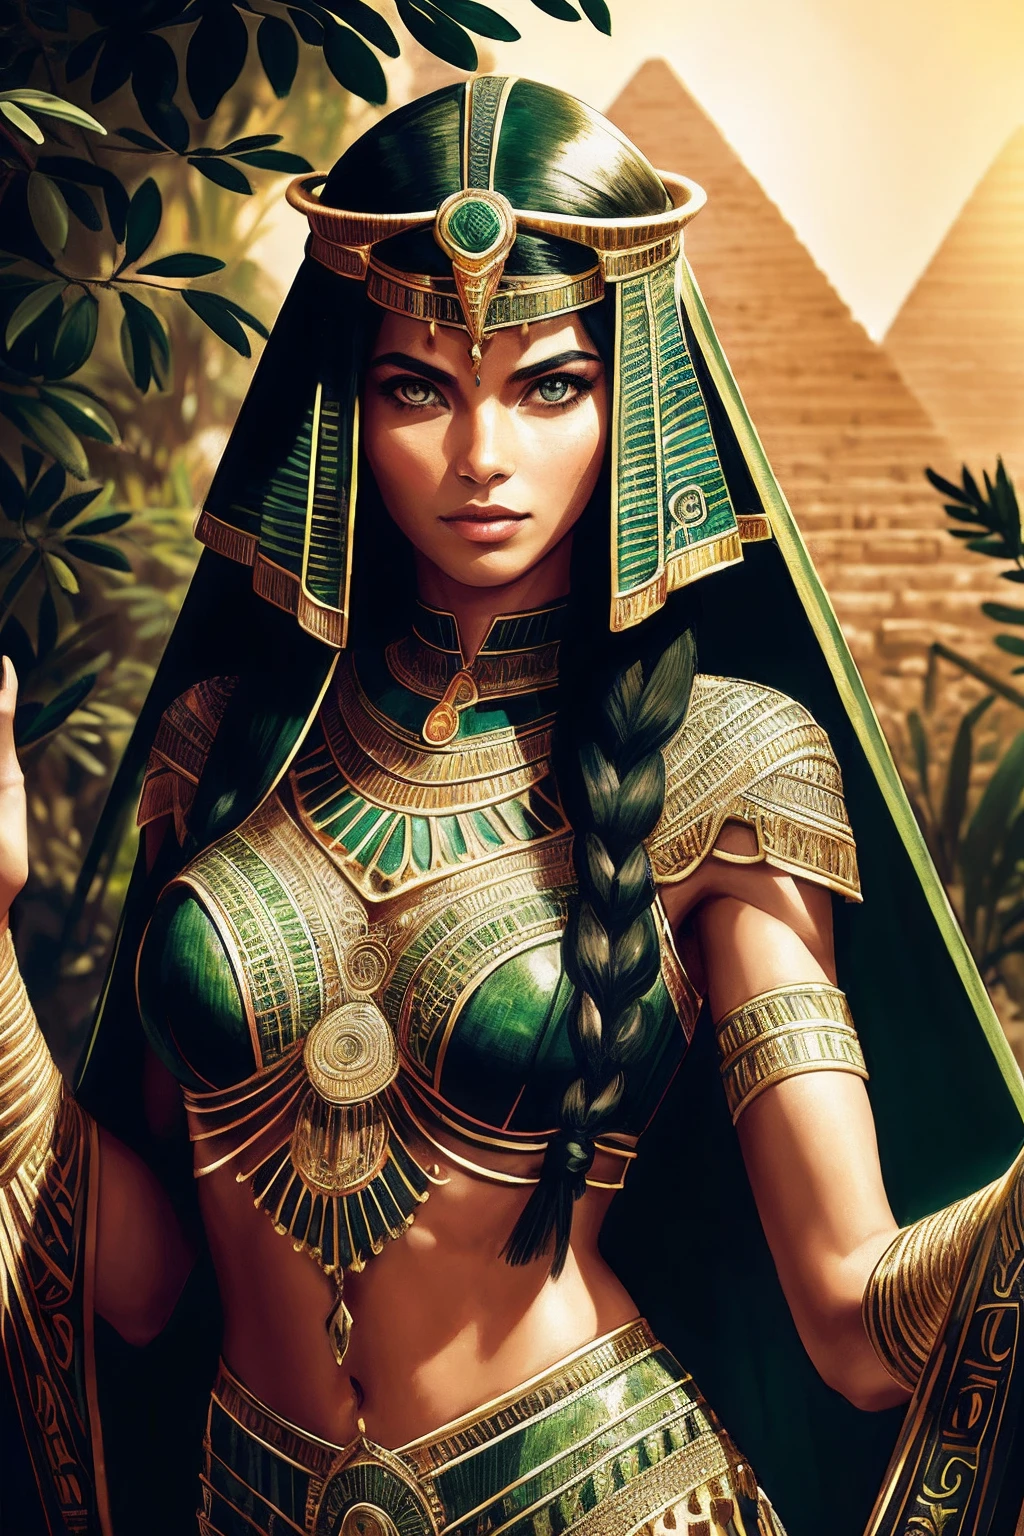 ผู้หญิงอียิปต์ผู้ใหญ่ 1 คน, ตาสีเขียว, ปีกผมสีดำ, ภาพเหมือน, ตามลำพัง, ร่างกายส่วนบน, มองไปที่ผู้ดู, พื้นหลังโดยละเอียด, ใบหน้าที่มีรายละเอียด,  เก่าอียิปต์AI, ธีมอียิปต์โบราณ,  นักรบป่าดุร้าย, เสื้อผ้าชนเผ่าสีชมพู, ออบซิเดียน, ท่าทางการป้องกัน, มีดหิน, พุ่มไม้, พืชมีพิษ, หิน,  อากาศชื้น, ความมืด, บรรยากาศภาพยนตร์,
ห้องมืด, แสงสลัว (zenยุ่งเหยิง, มันดาลา, ยุ่งเหยิง, enยุ่งเหยิง), (โทนสีทองและสีเขียว:0.5)
(สไตล์ 35 มม:1.1), ด้านหน้า, ผลงานชิ้นเอก, ภาพยนตร์ปี 1970, , แสงภาพยนตร์, เหมือนจริง, รายละเอียดความถี่สูง, ฟิล์ม35มม, (เนื้อฟิล์ม), เสียงฟิล์ม,